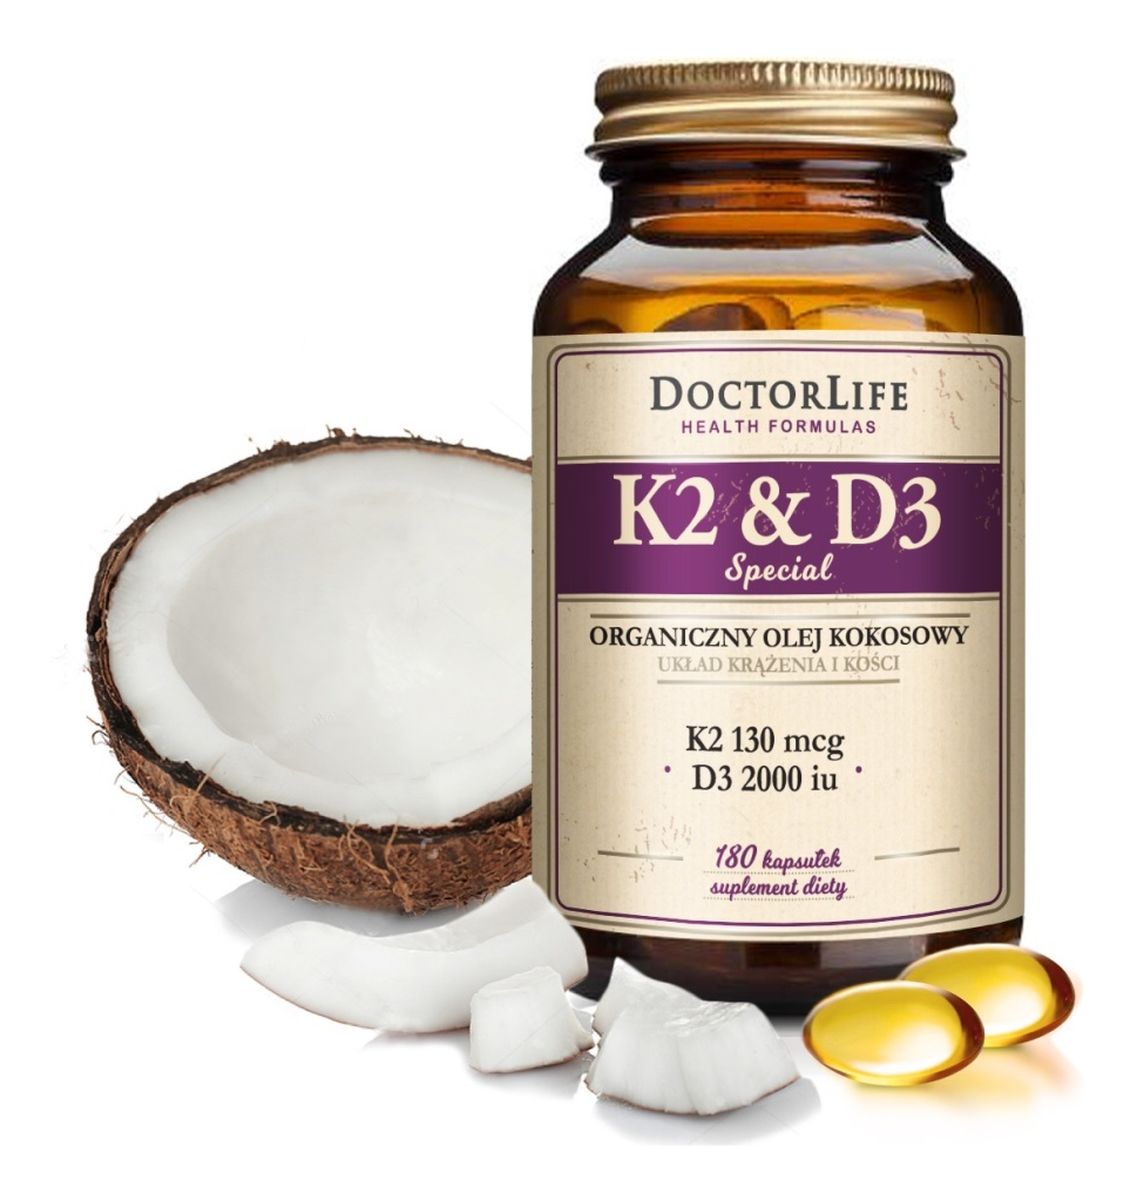 K2 & D3 organiczny olej kokosowy 130ug K2 mk-7 & 2000iu D3 suplement diety 180 kapsułek